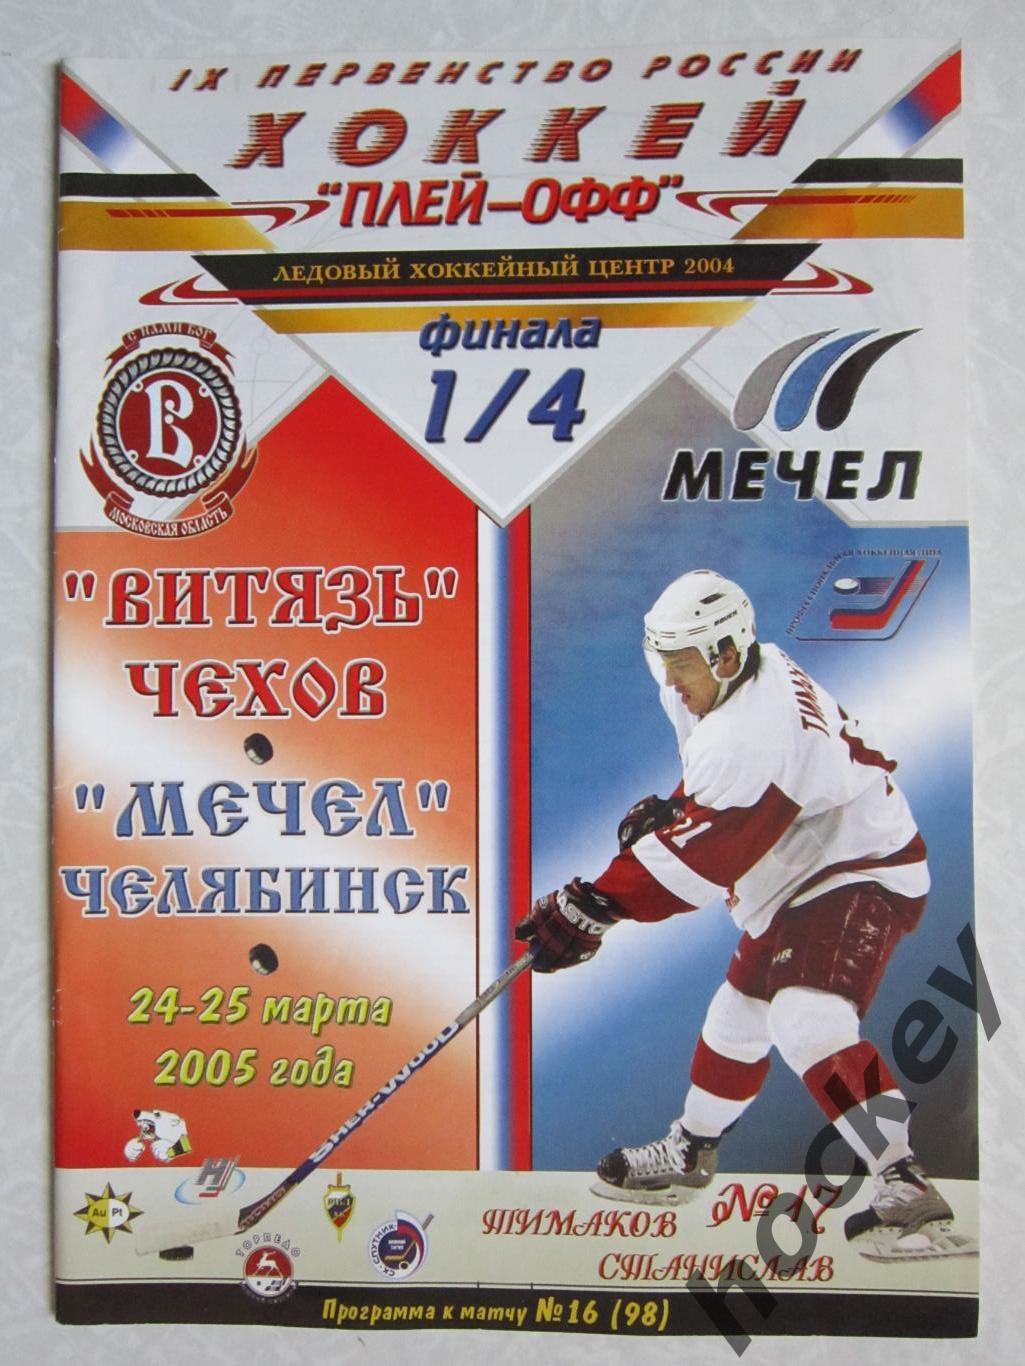 Витязь Чехов - Мечел Челябинск 24,25.03.2005. Постер ХК Витязь - 2004/05.